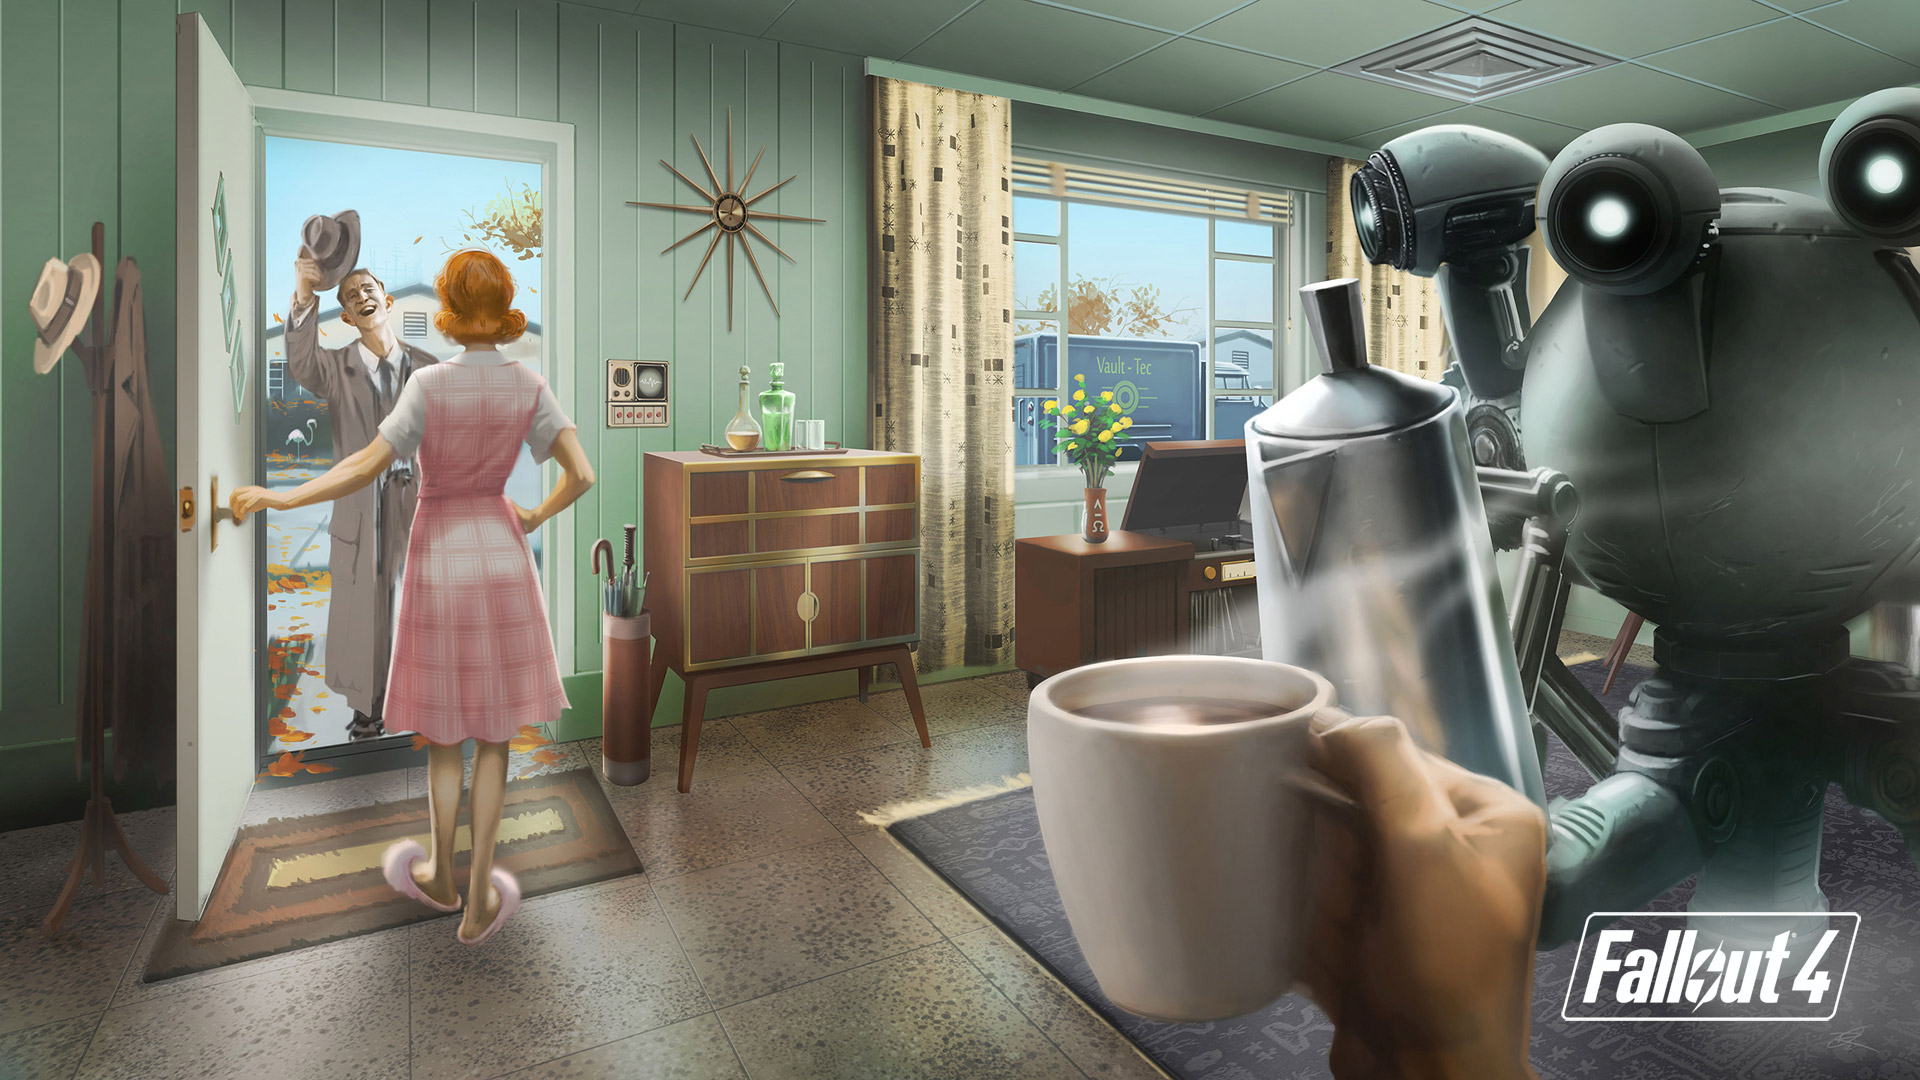 Fallout 4 wallpaper 6